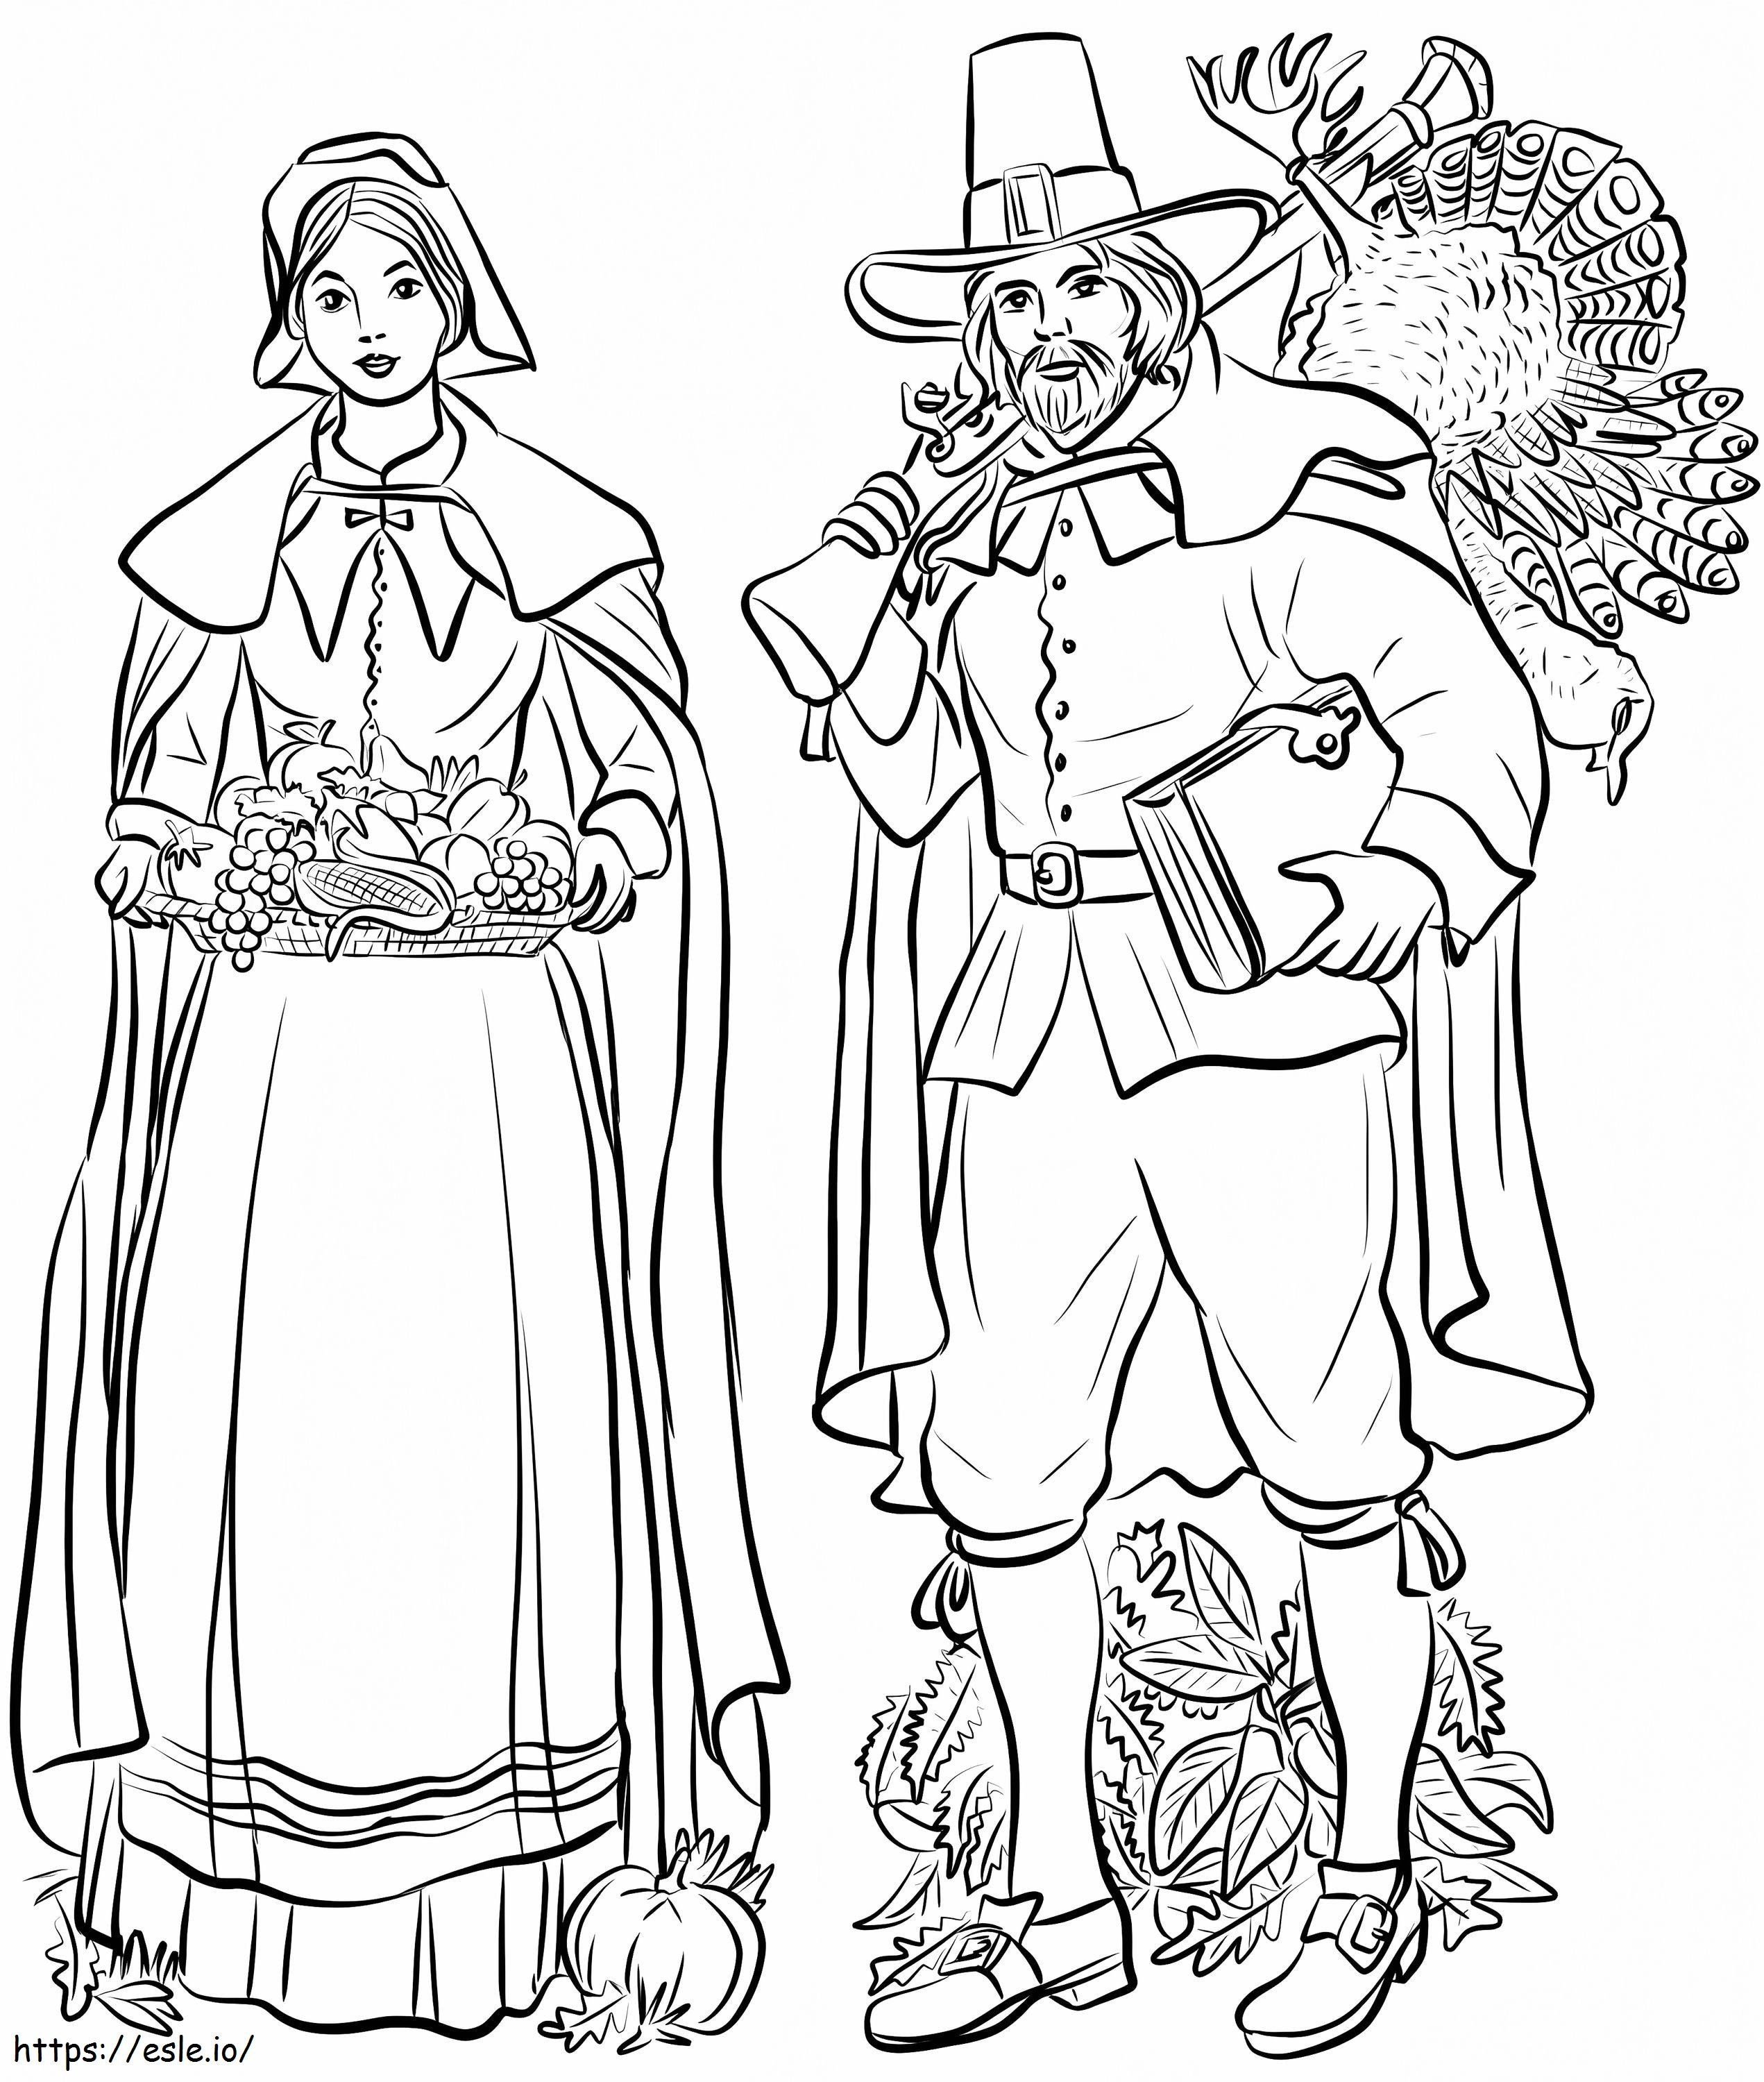 Coloriage Couple de pèlerins 2 à imprimer dessin